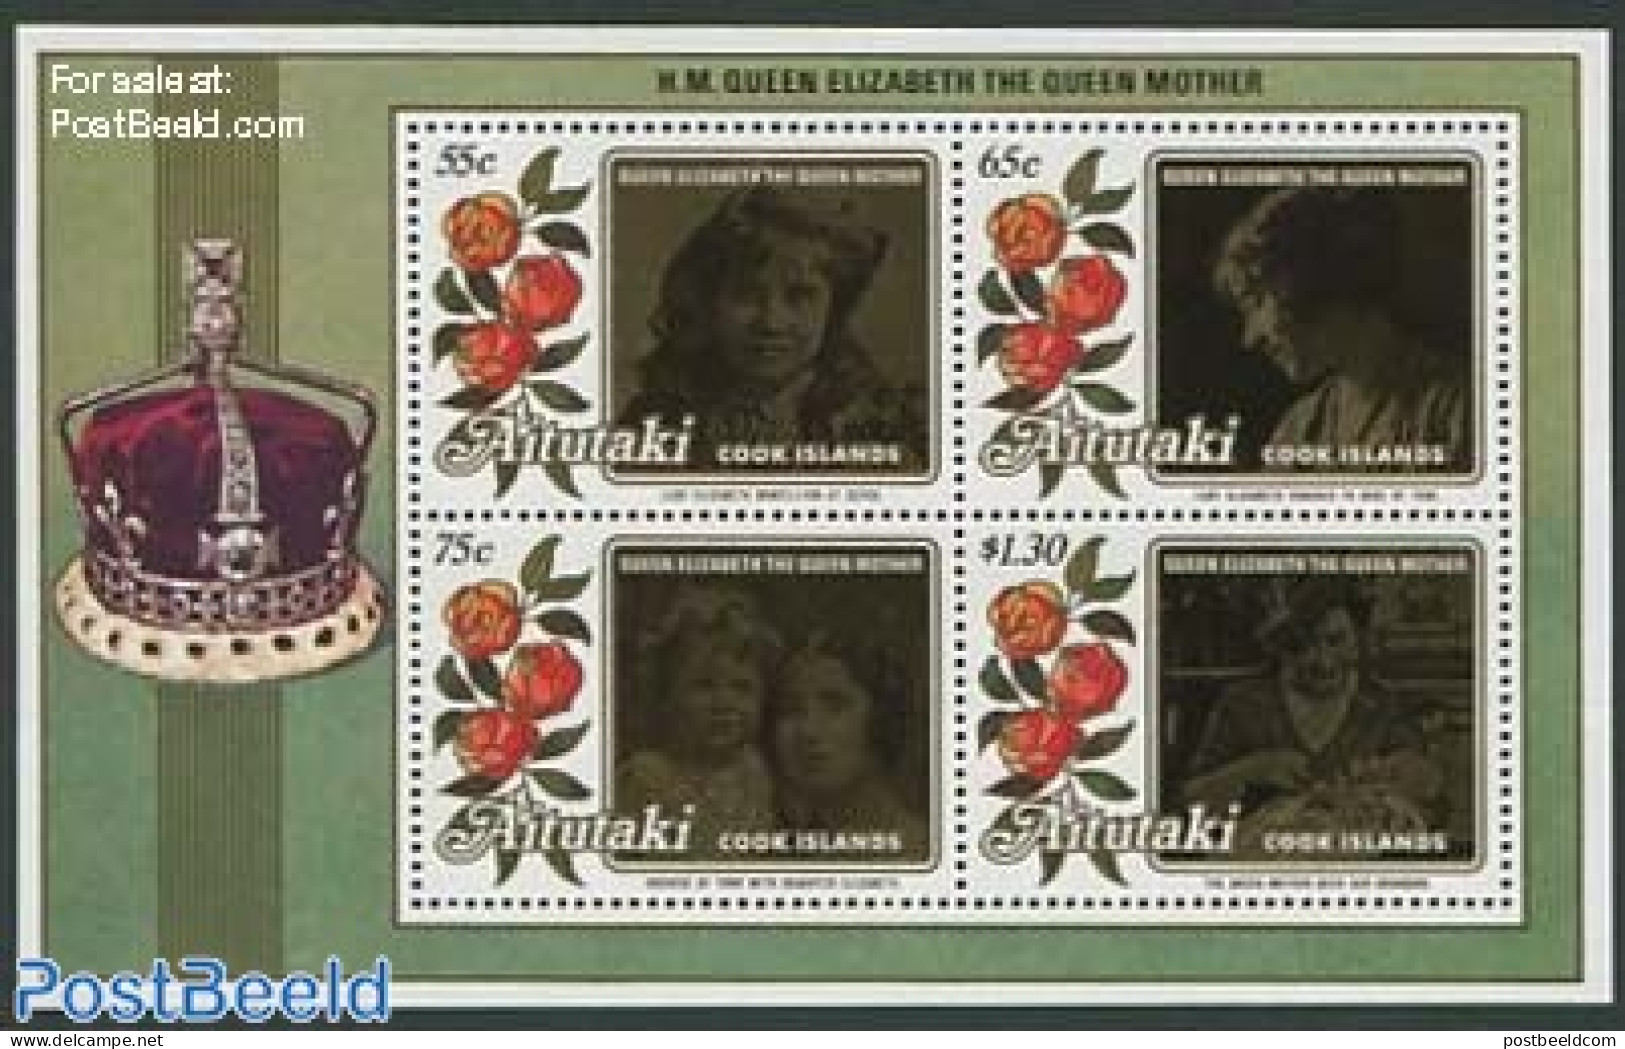 Aitutaki 1986 Queen Mother S/s, Mint NH, History - Kings & Queens (Royalty) - Königshäuser, Adel